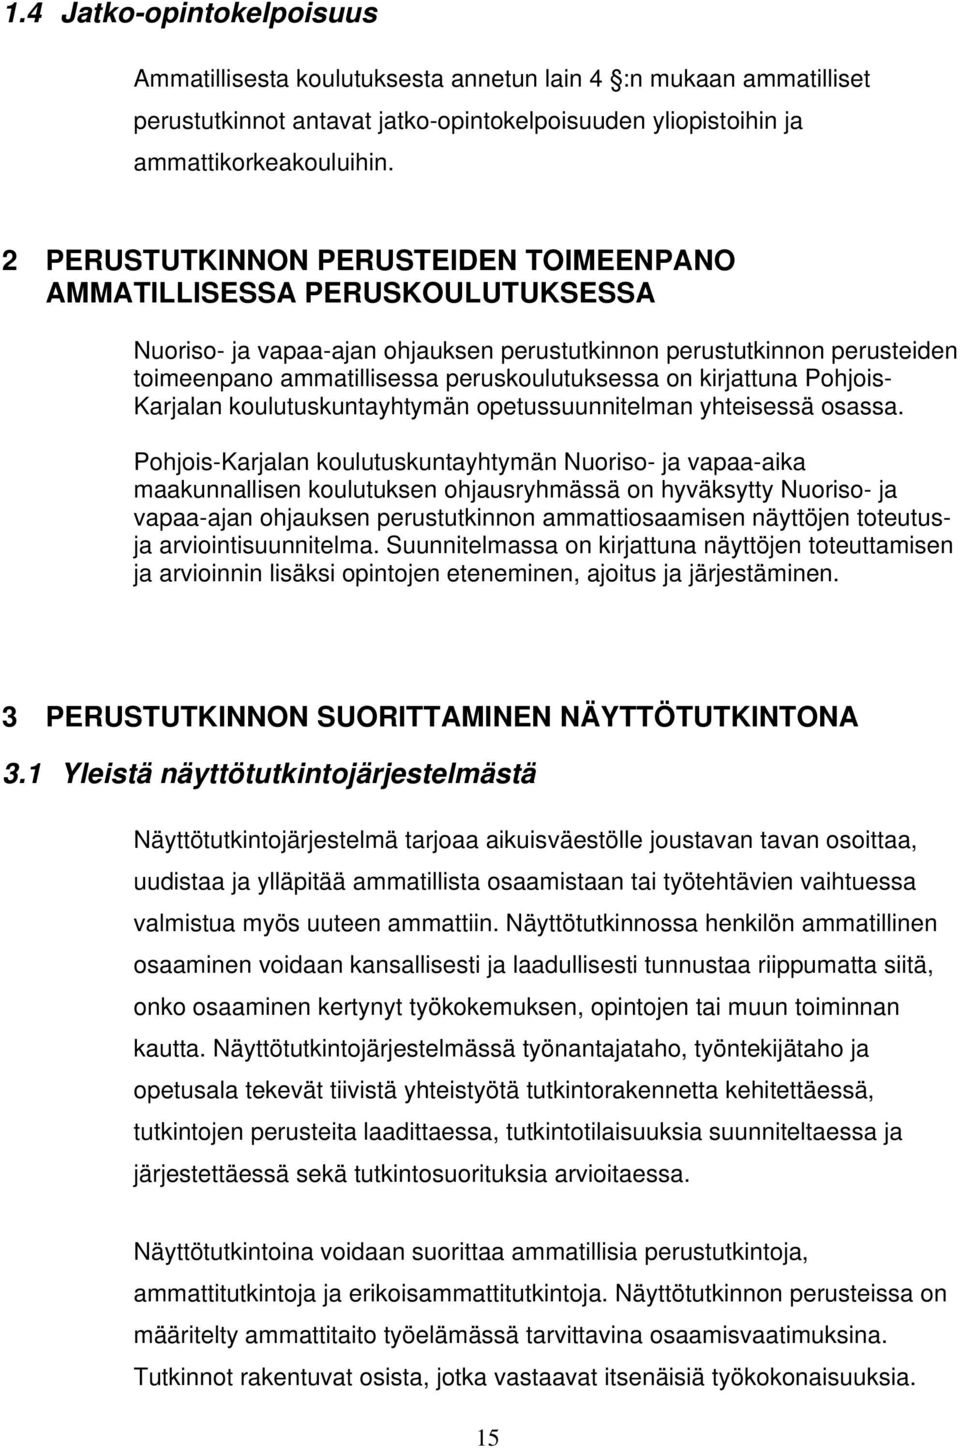 kirjattuna Pohjois- Karjalan koulutuskuntayhtymän opetussuunnitelman yhteisessä osassa.